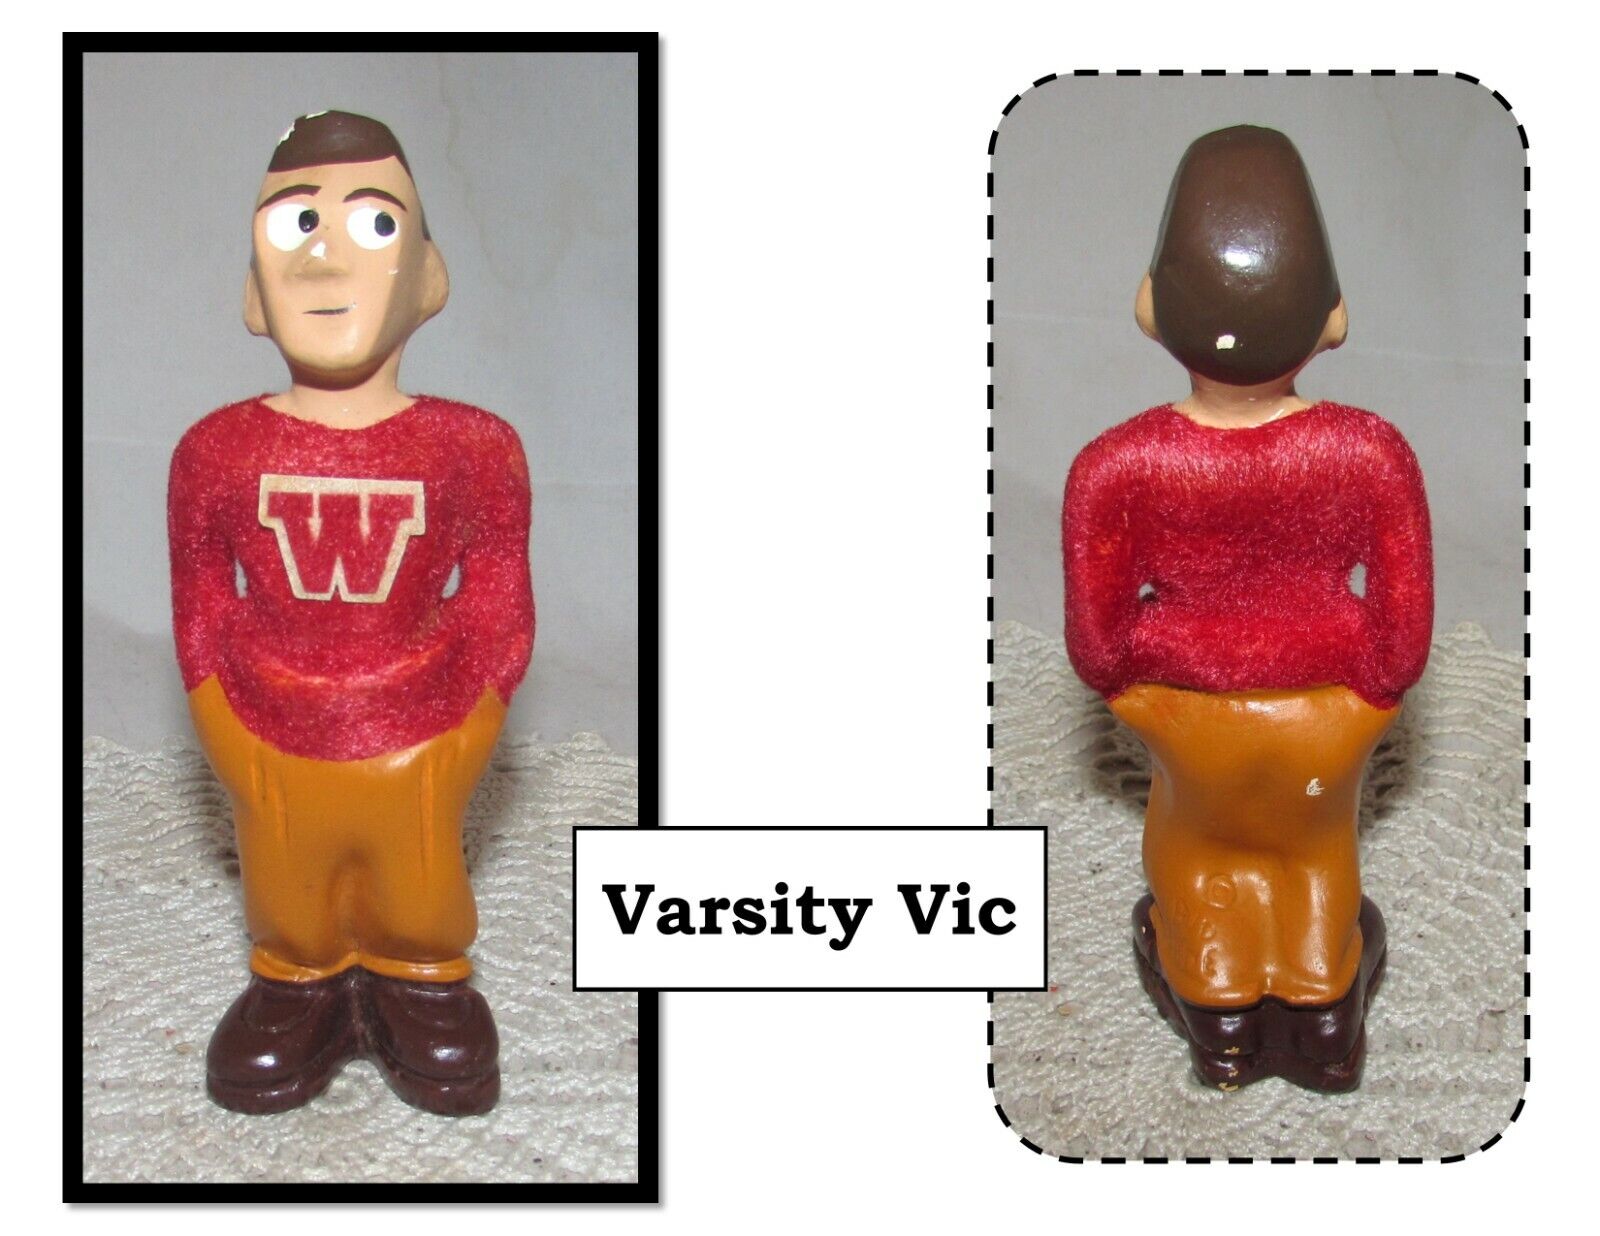 VTG Chalkware W Varsity Vic Collegiate Figurine by Bud Plone, Jest Art Originals